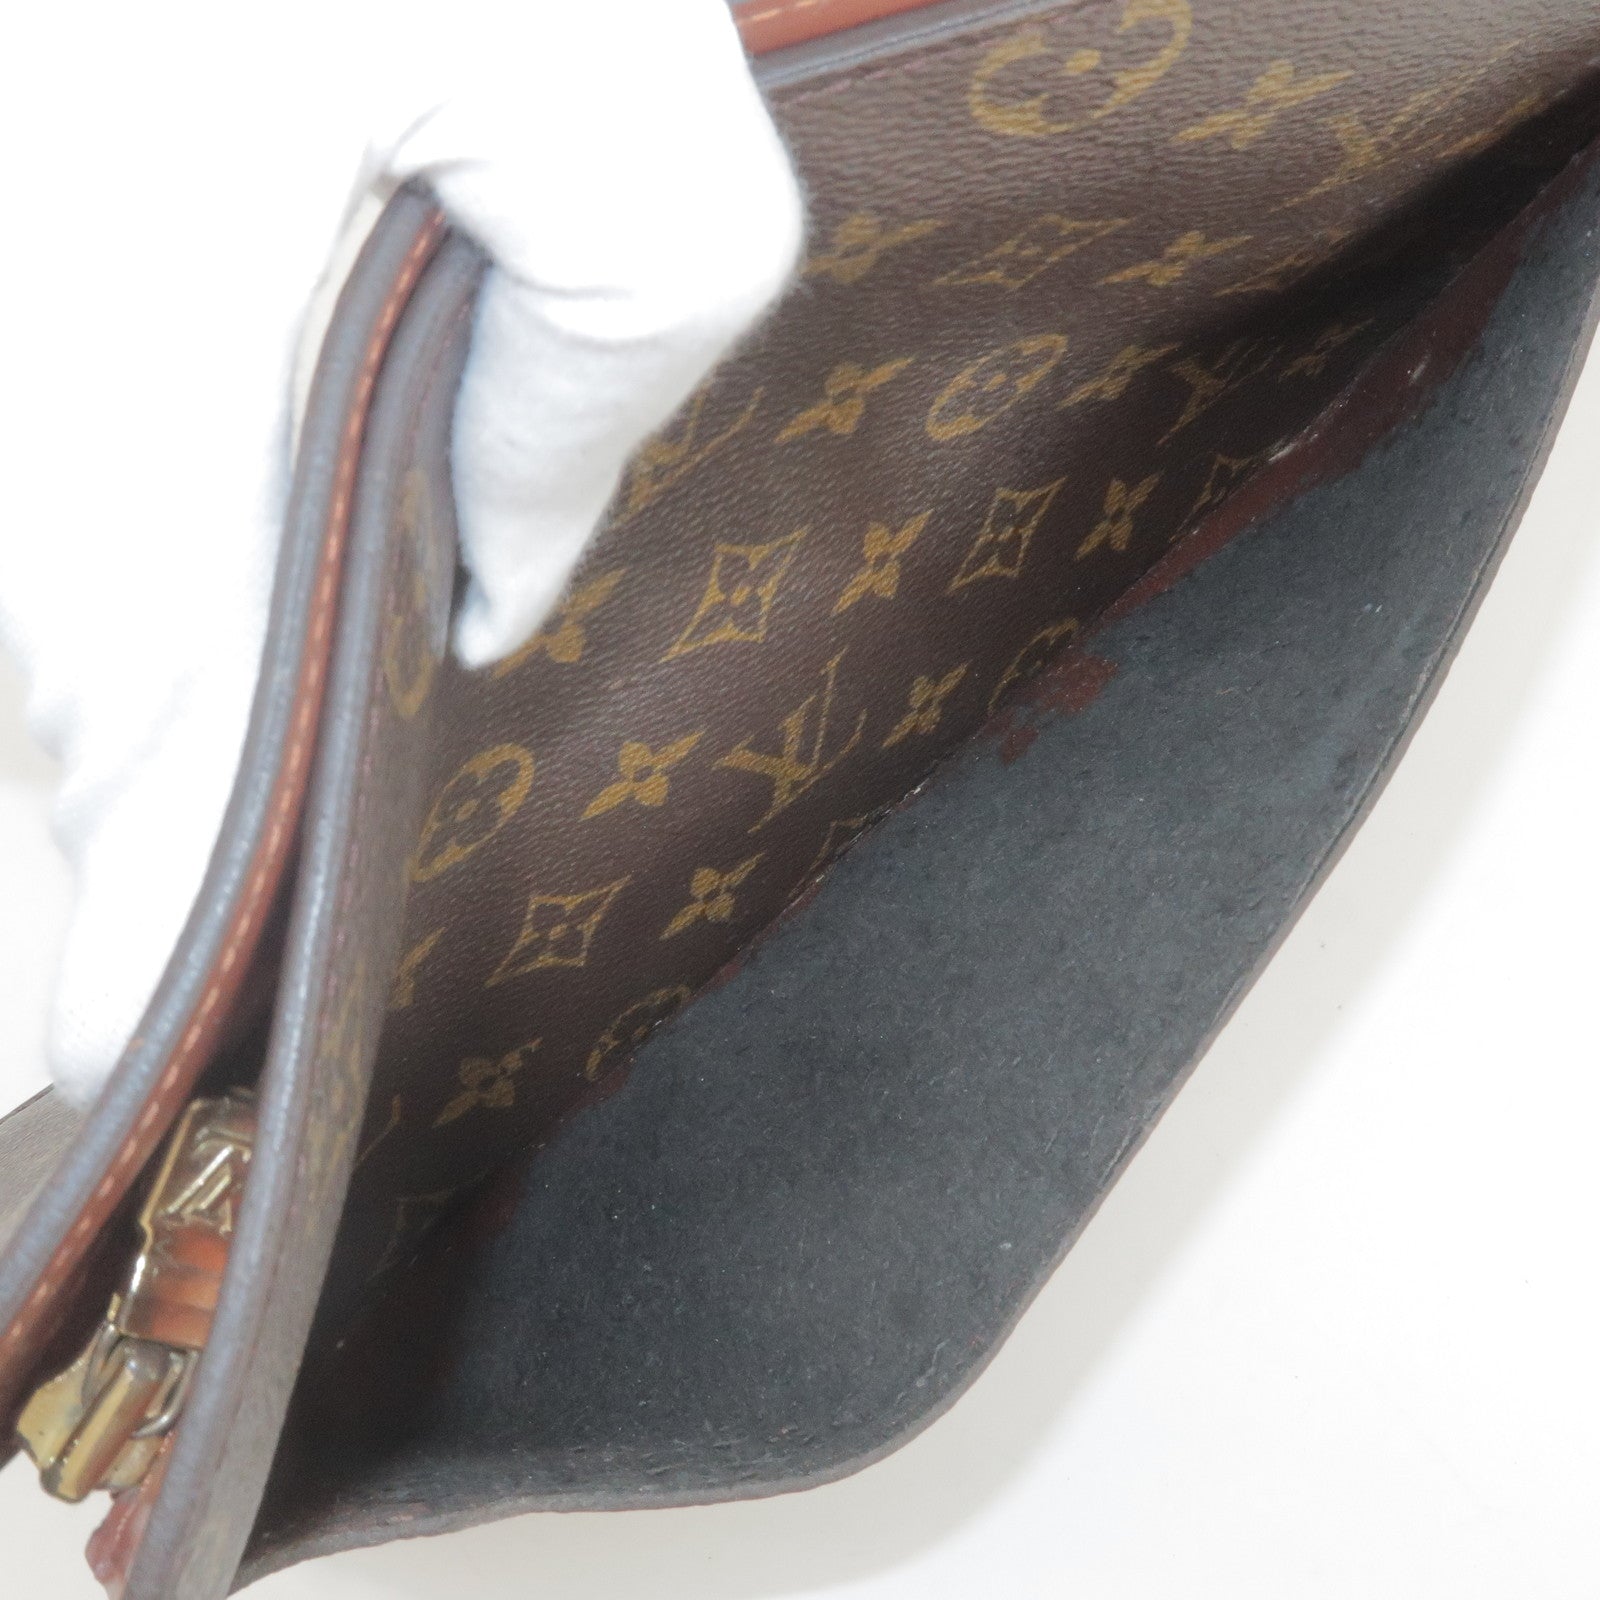 Authentic Louis Vuitton Monogram Pochette Homme Clutch Hand Bag M51795 LV  J9704